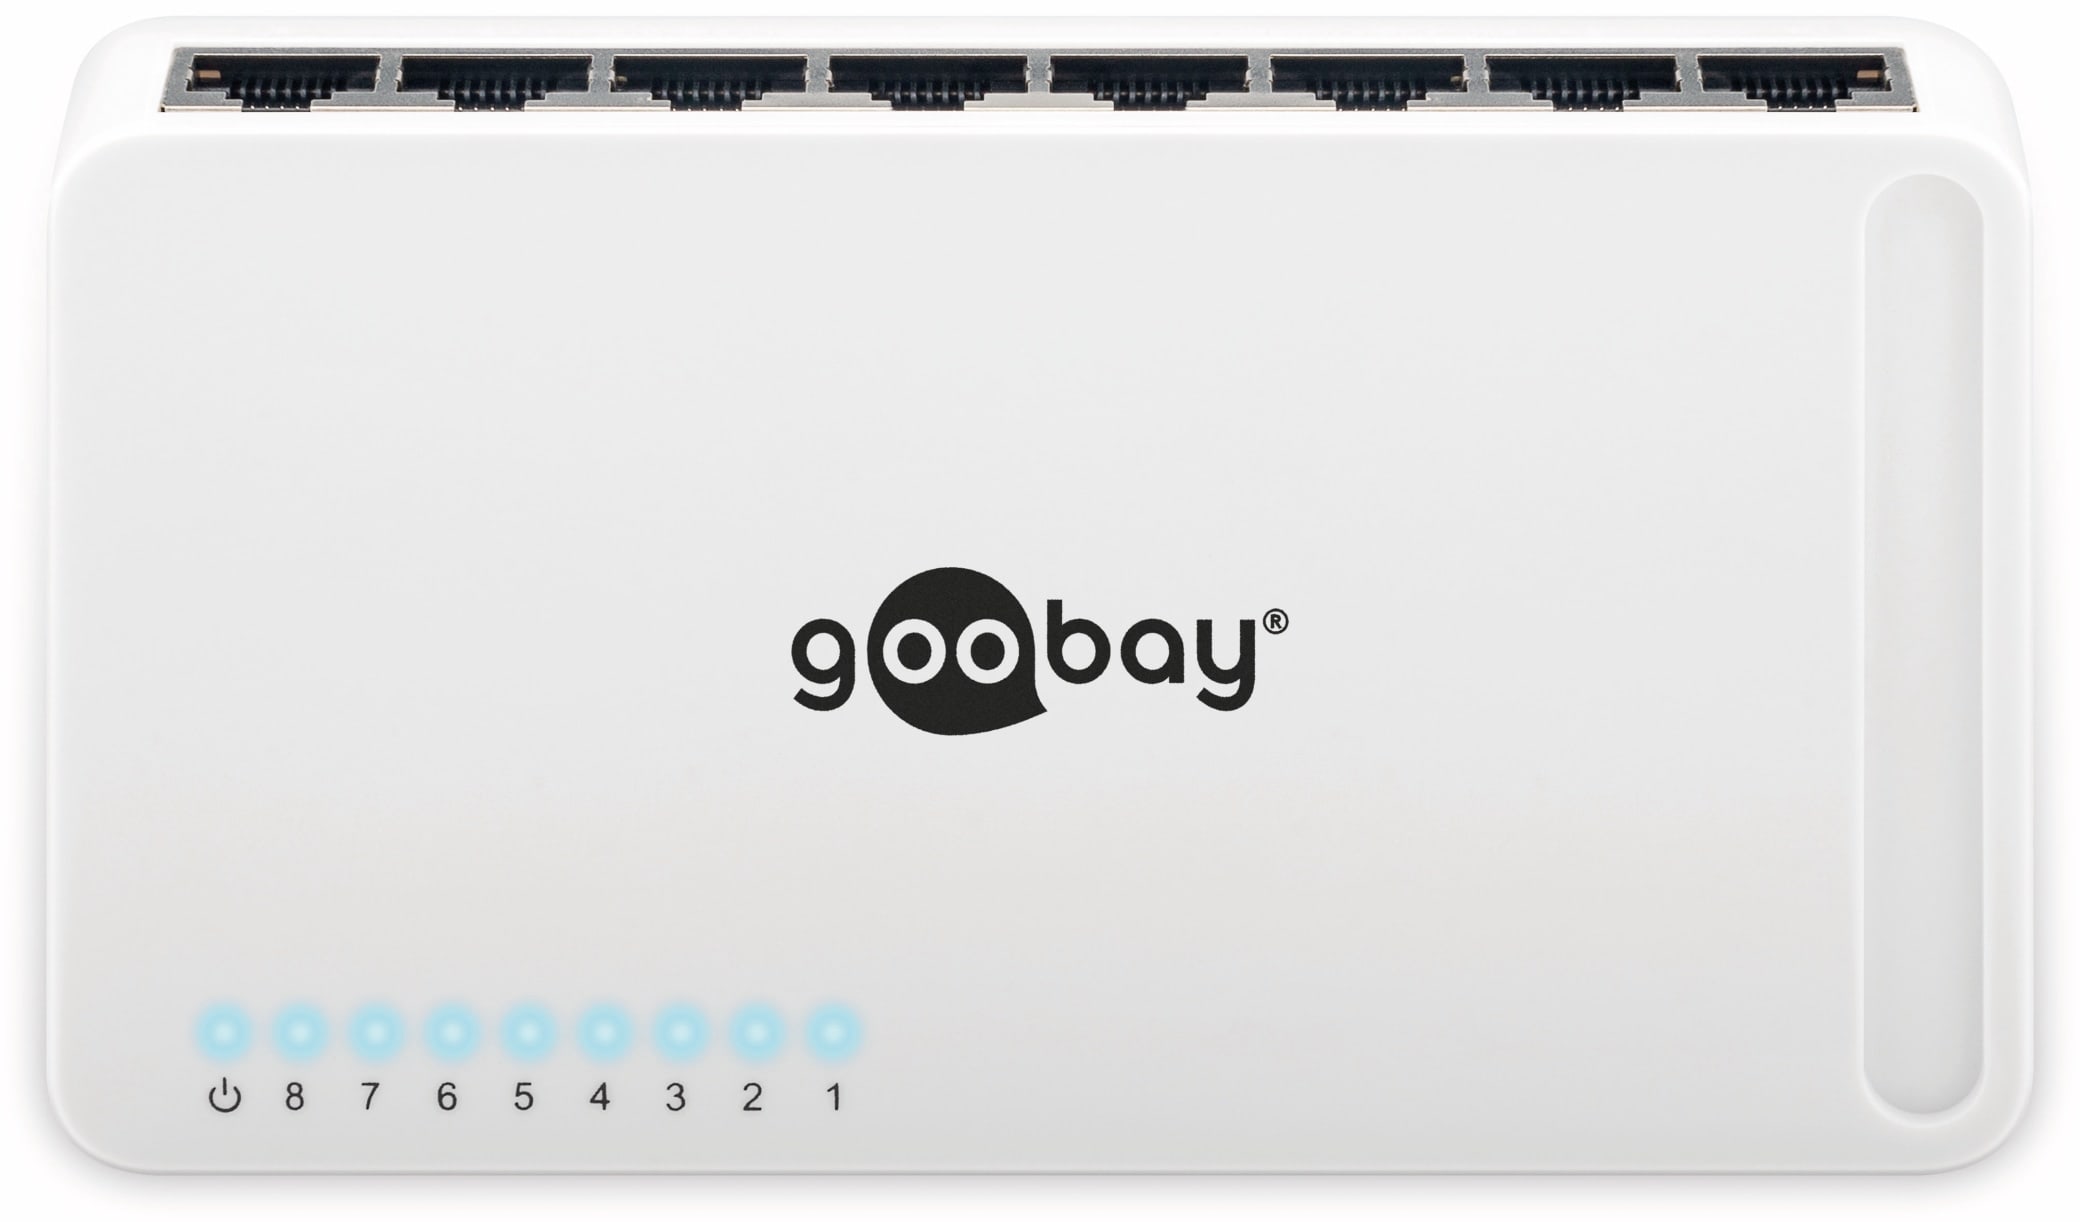 GOOBAY Gigabit Netzwerk-Switch 93373, 8-Port, weiß